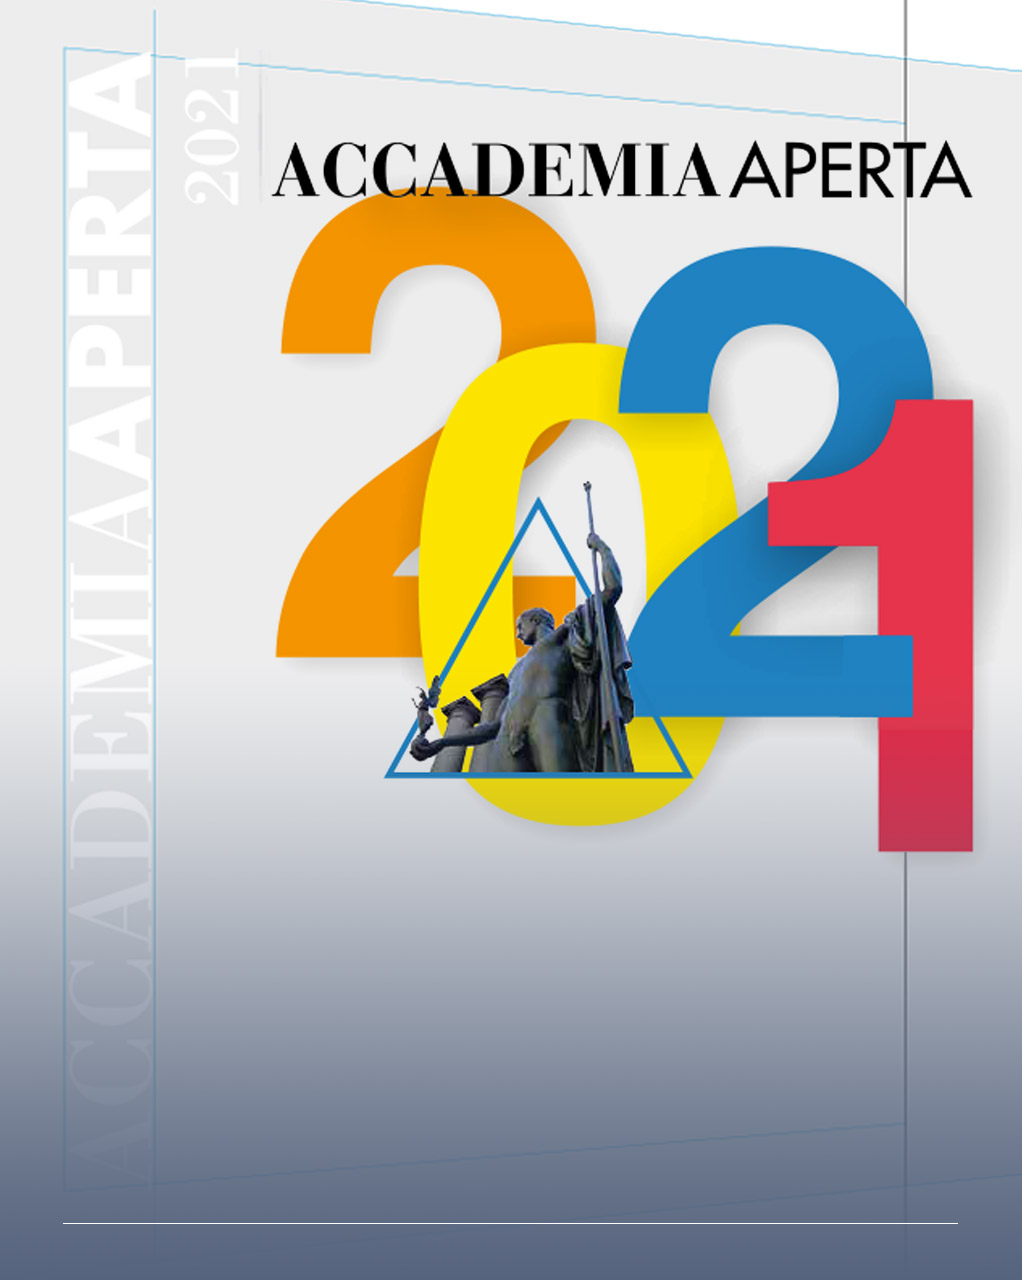 Immagine con la scritta 2021 a colori, il logo di Brera e la dicitura accademia aperta